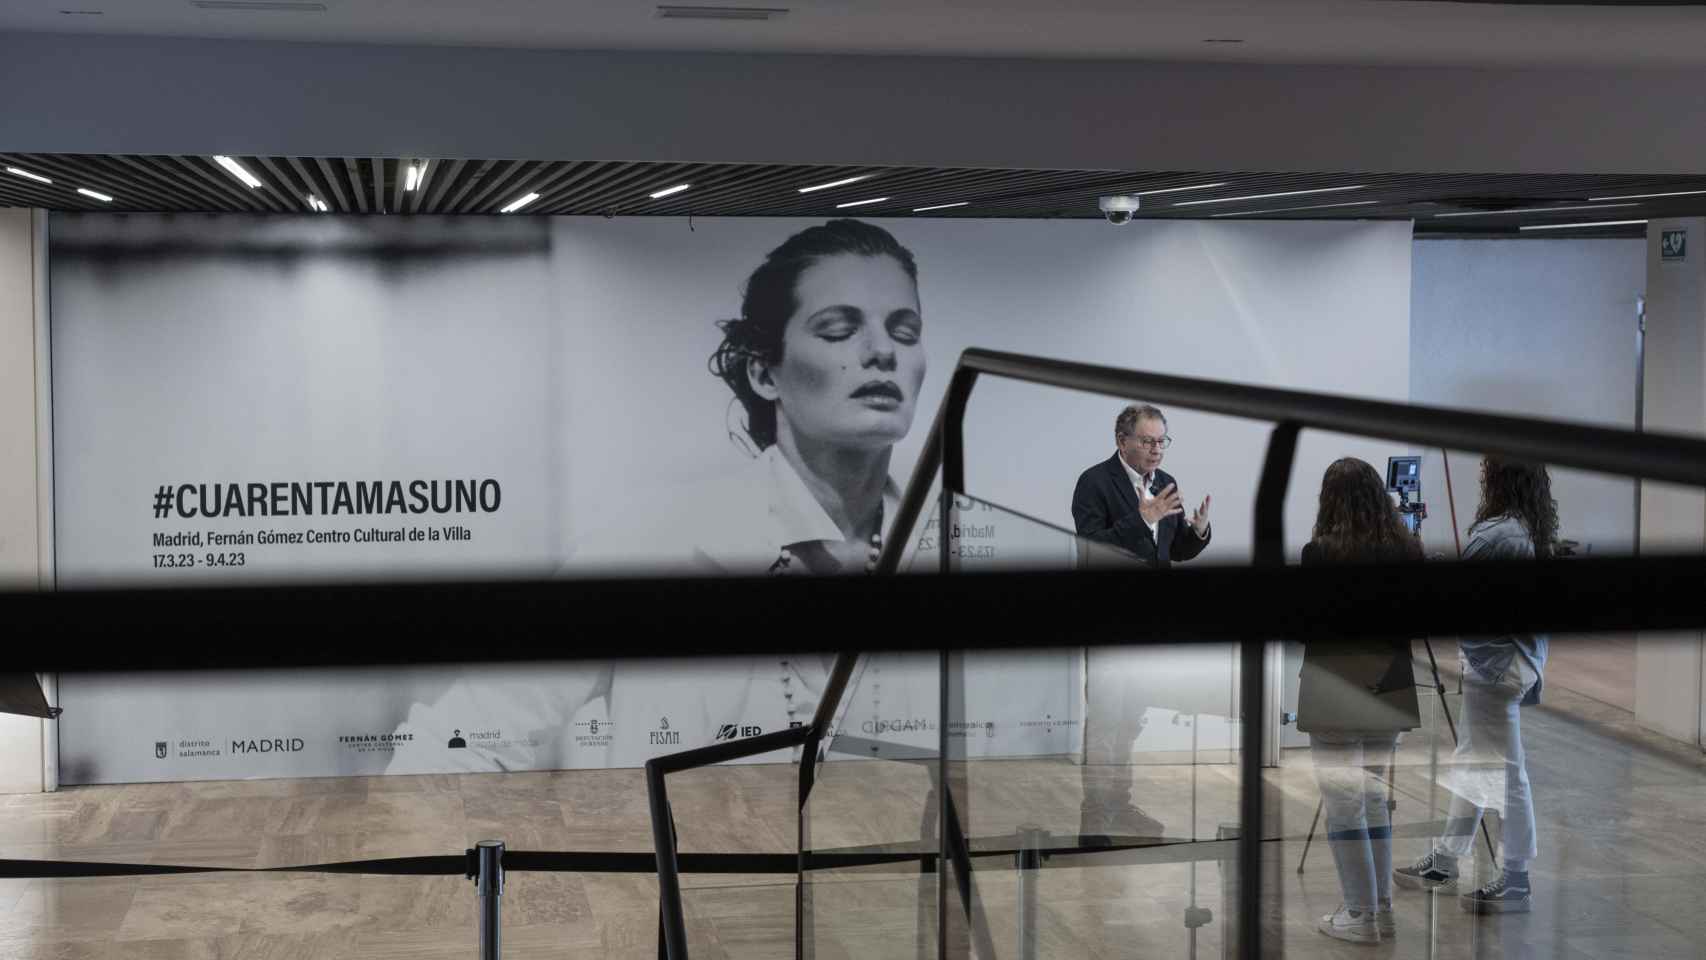 La exposición de Roberto Verino '40+1' se puede visitar hasta el día 10 de abril en el Fernán Gómez, Centro Cultural de la Villa.